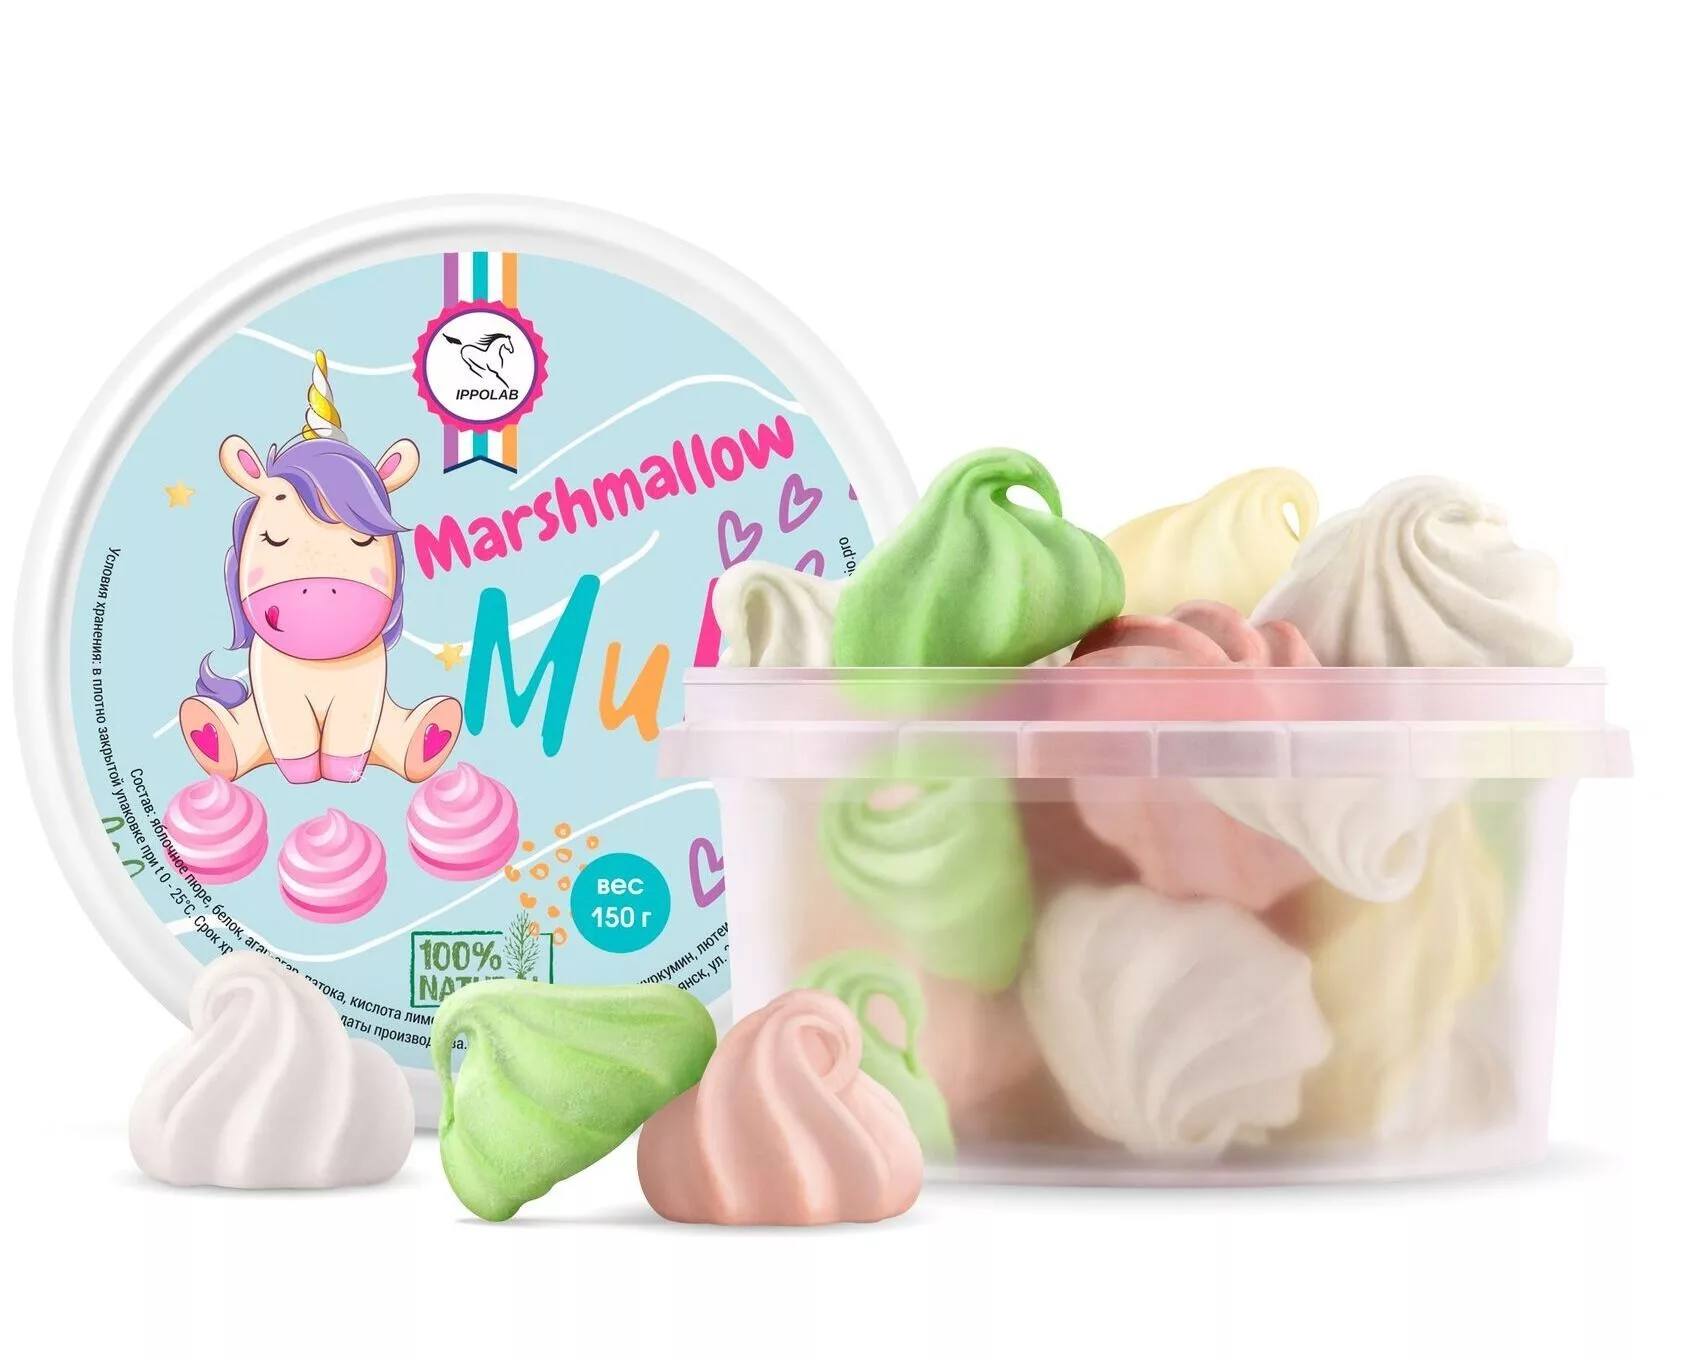  Marshmellow Mix IPPOLAB ()